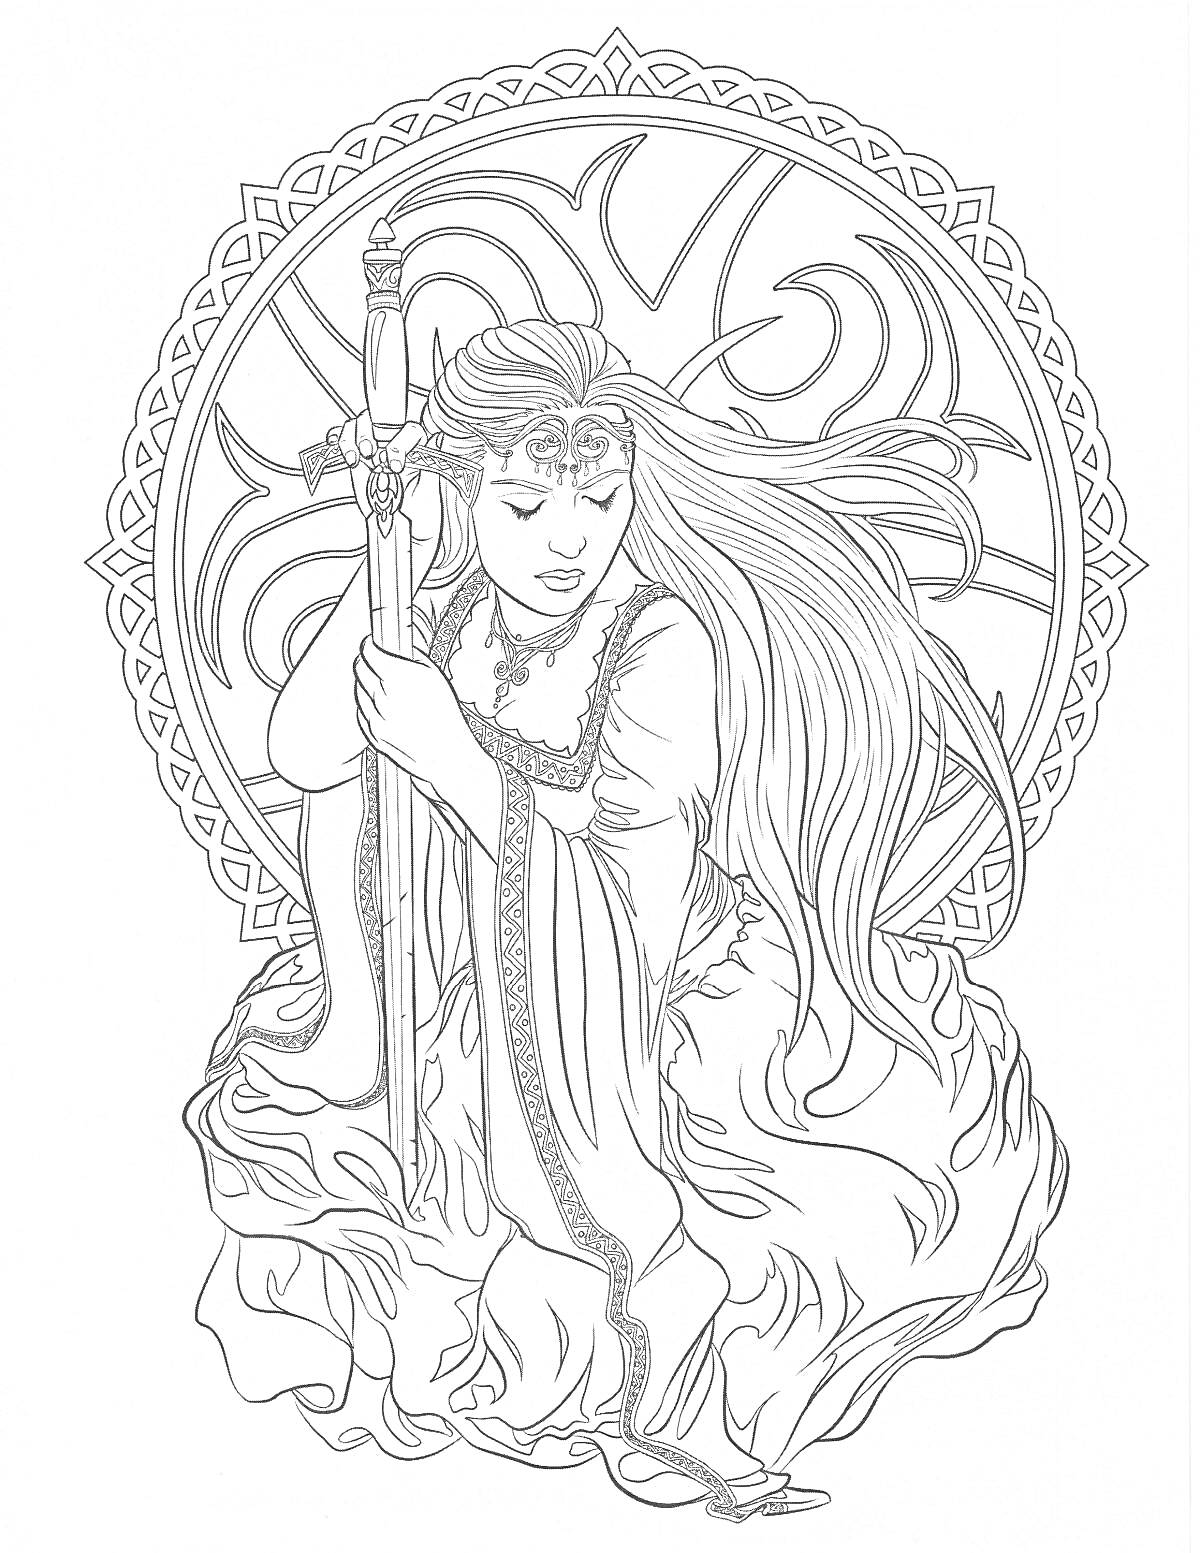 Раскраска Фэнтези девушка с длинными волосами, держащая меч, на фоне орнамента